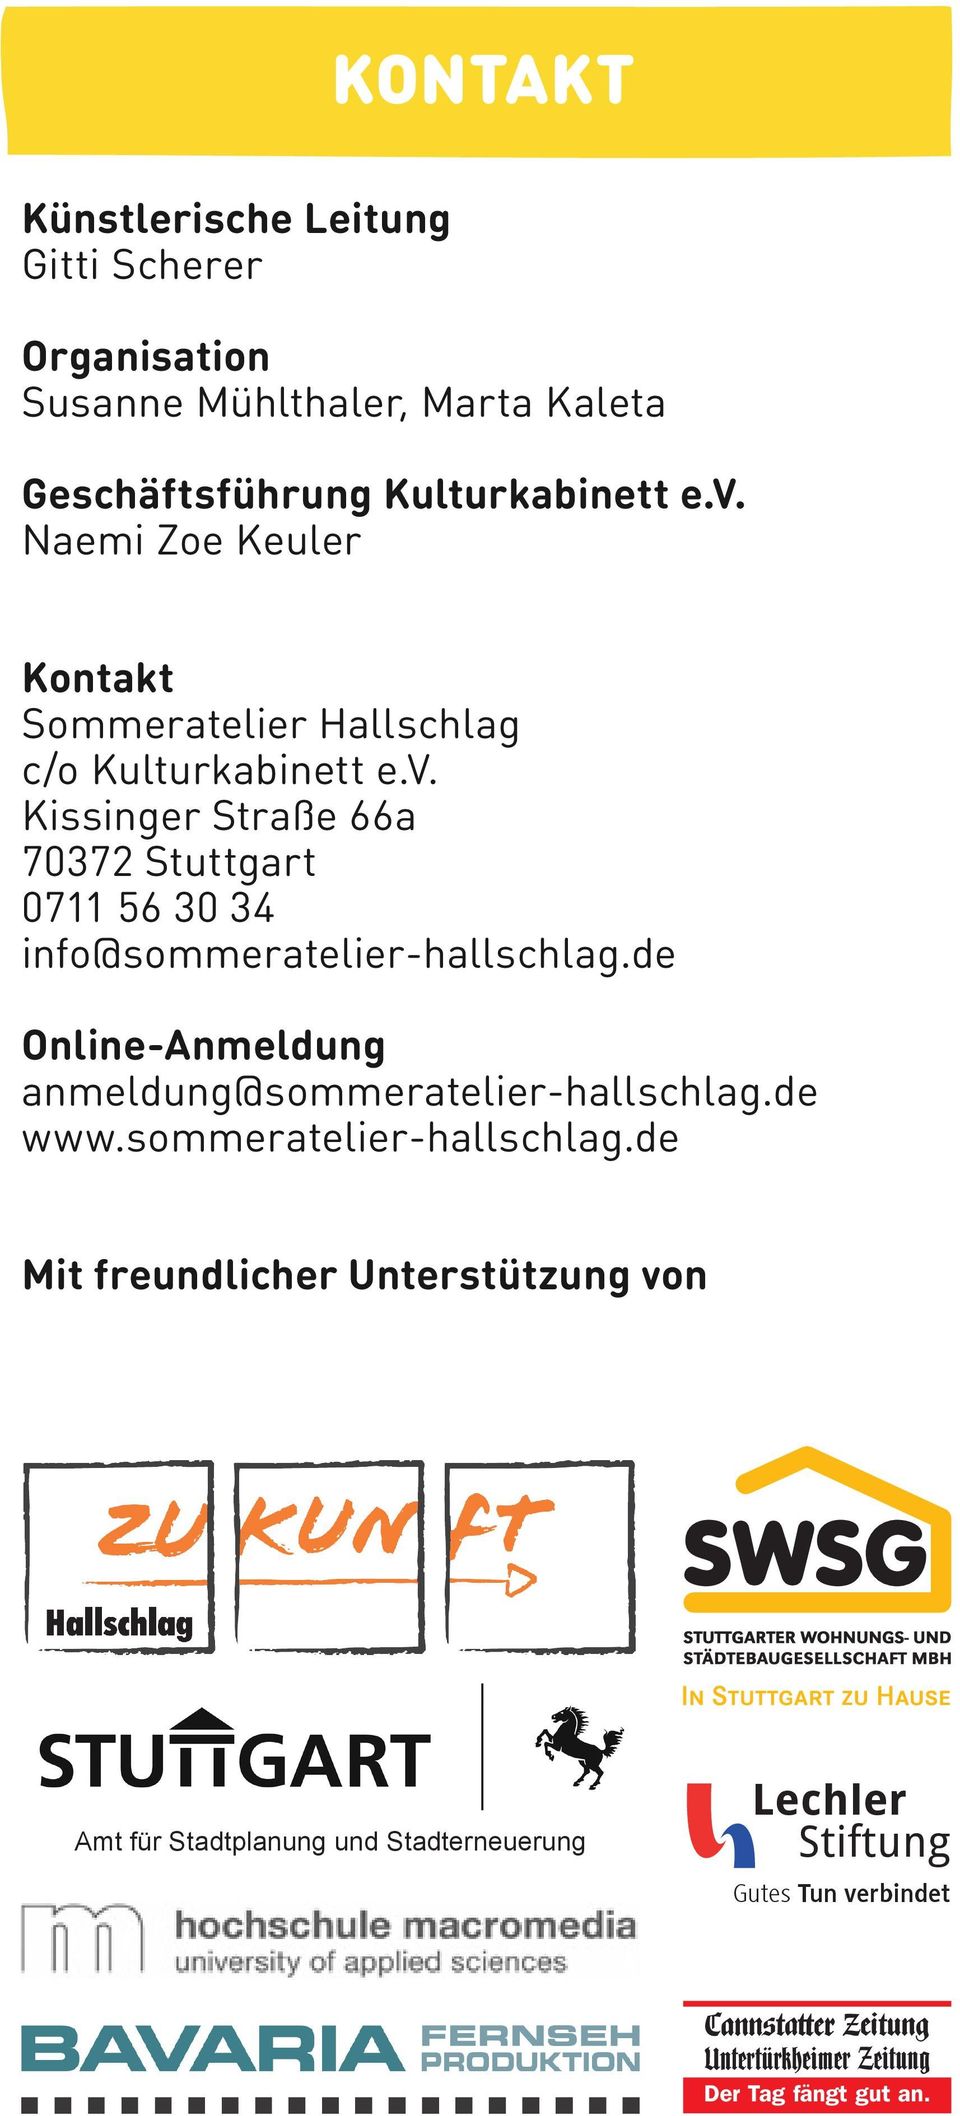 Kissinger Straße 66a 70372 Stuttgart 0711 56 30 34 info@sommeratelier-hallschlag.de Online-Anmeldung anmeldung@sommeratelier-hallschlag.